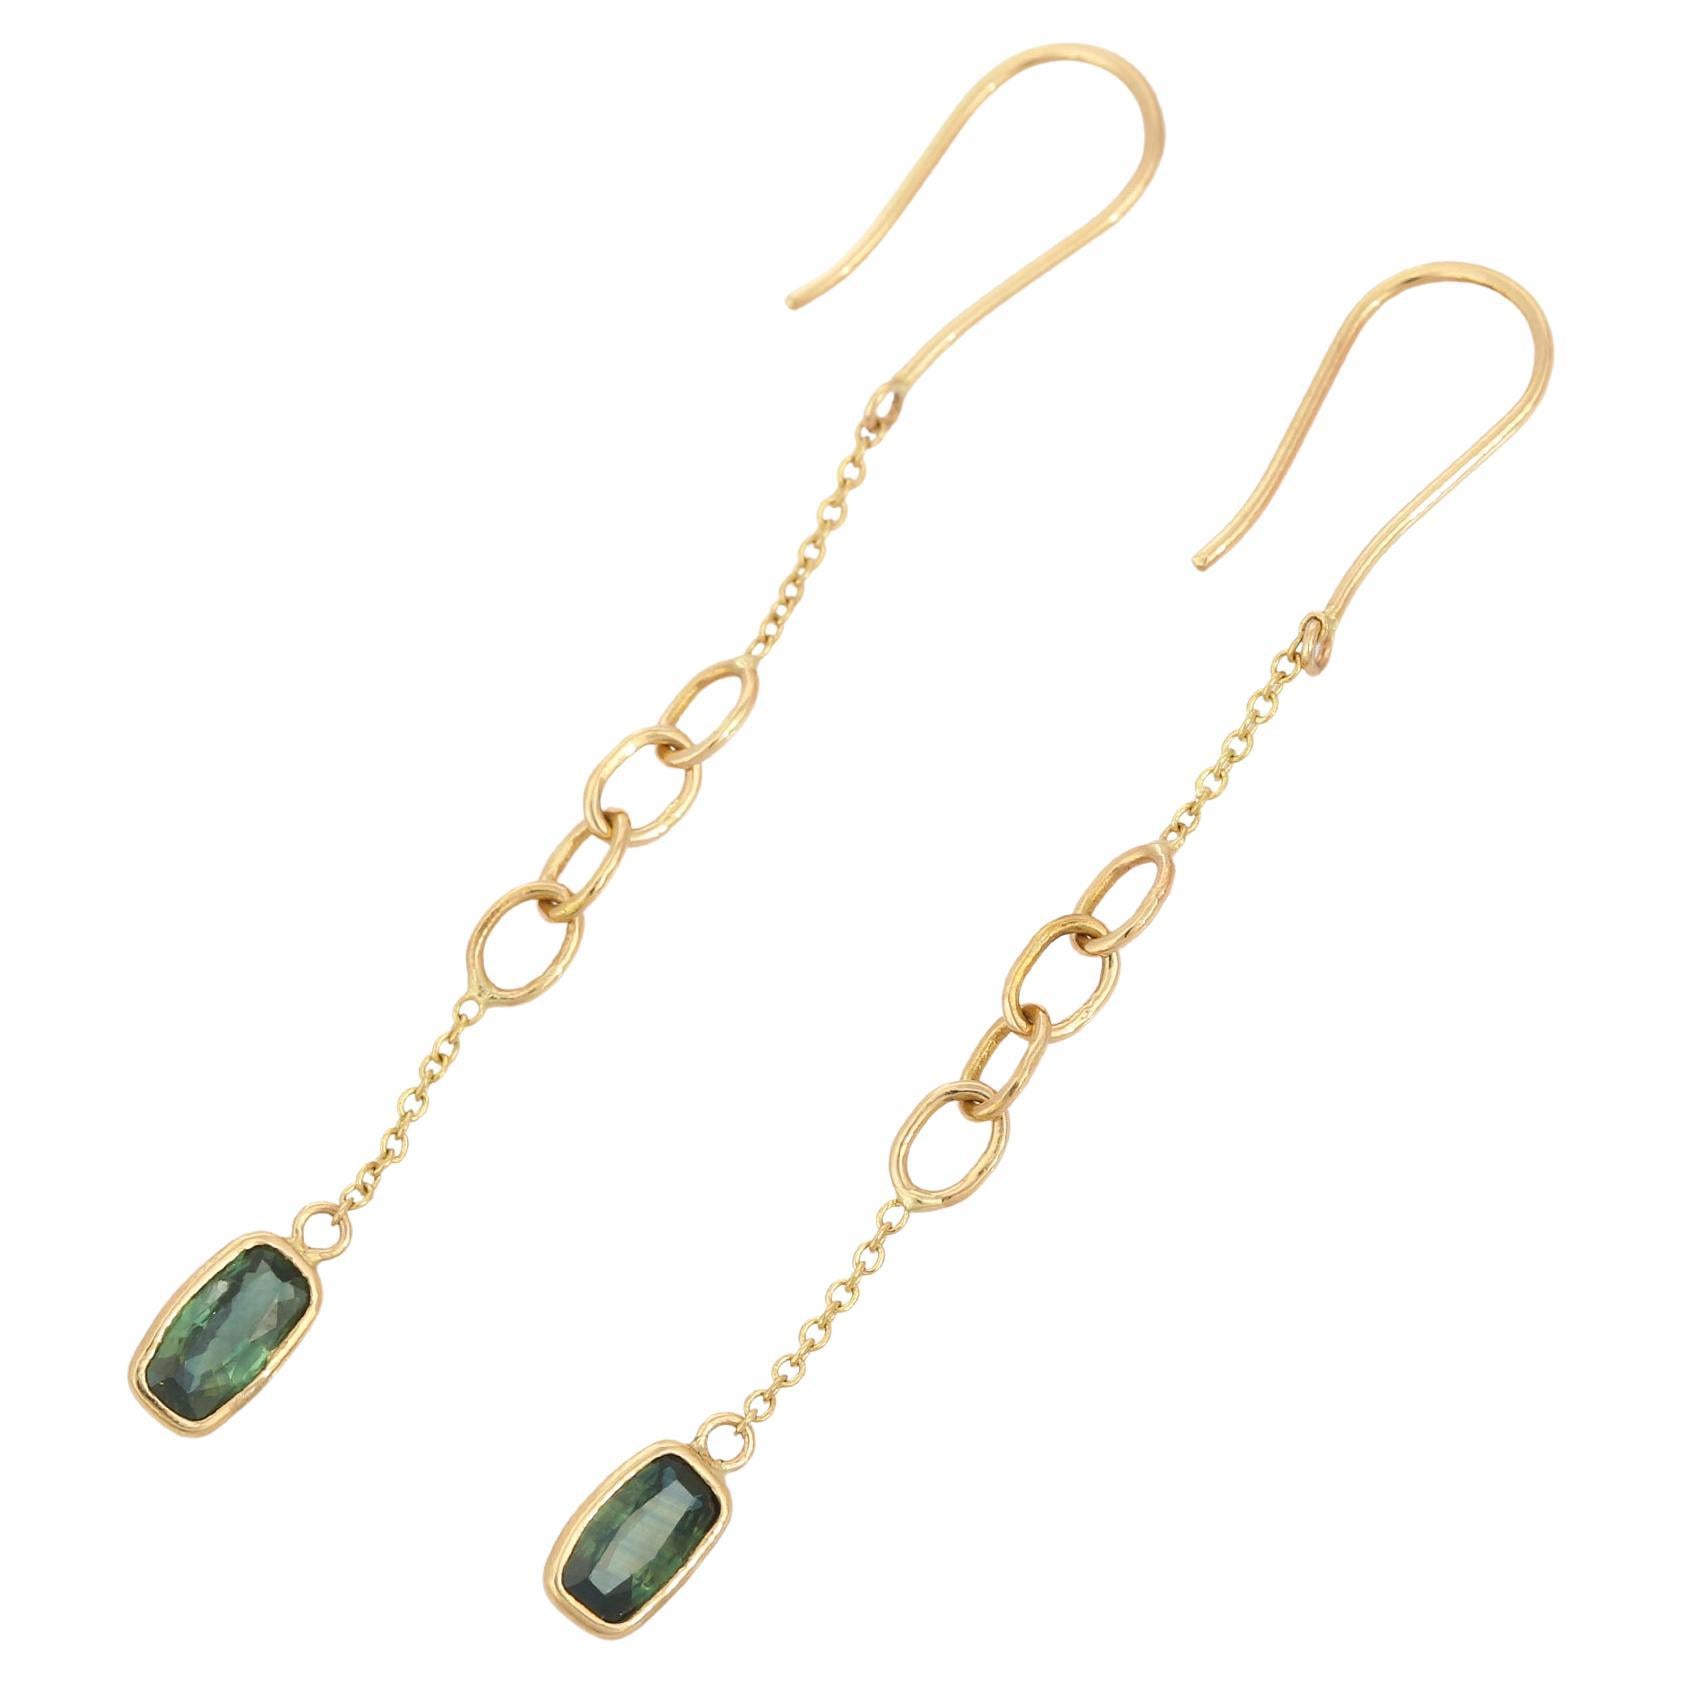 Minimalist Green Sapphire Dangle Drop Earrings in 18K Yellow Gold